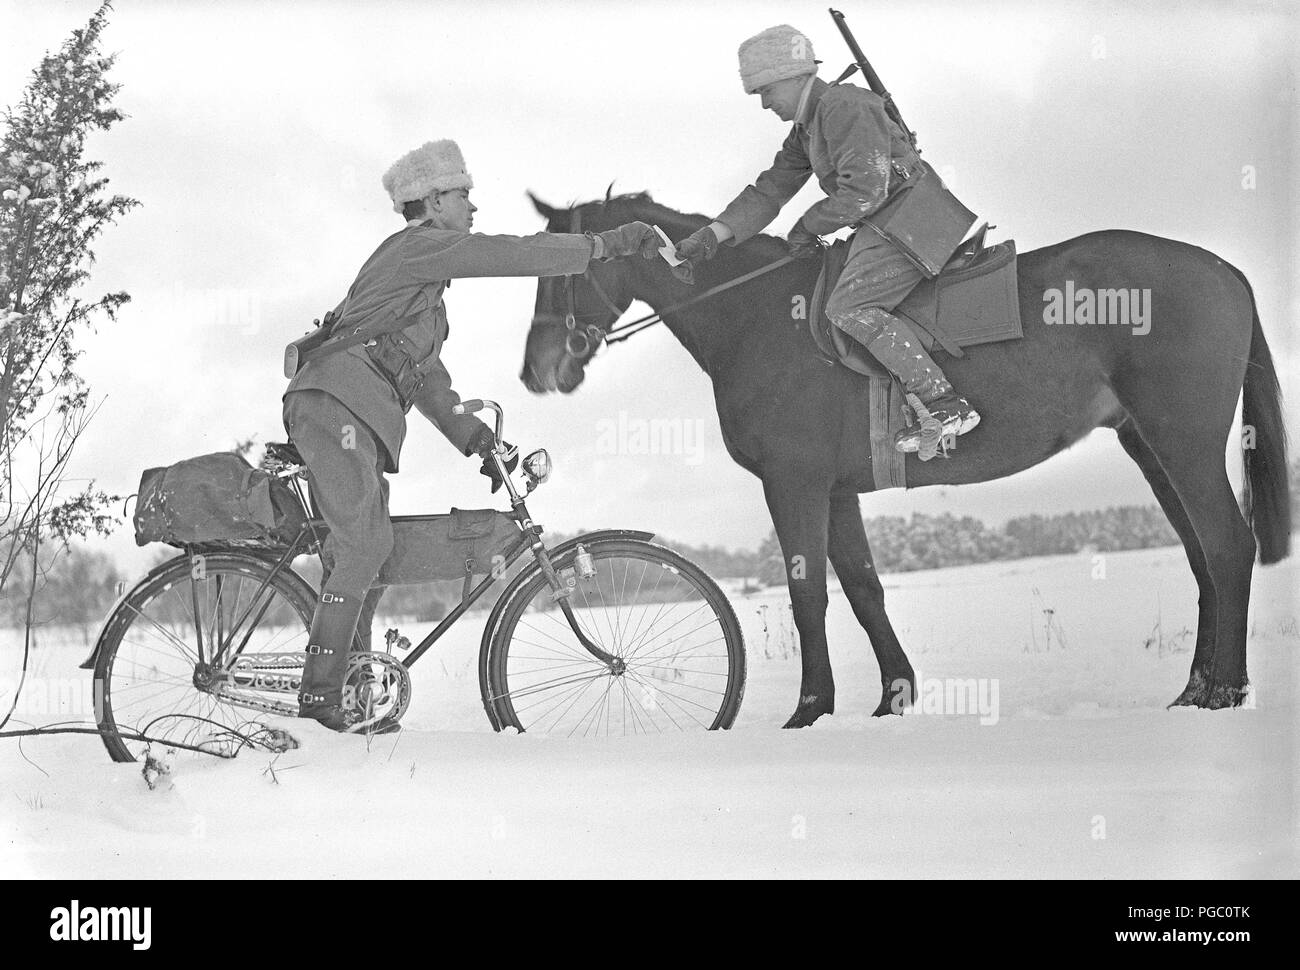 1940, soldat. Un courrier sur son vélo et une circonscription messager sont l'échange d'un message. L'armée suédoise est mobilisé pendant la Seconde Guerre mondiale. 211-5 Kristoffersson Photo Banque D'Images